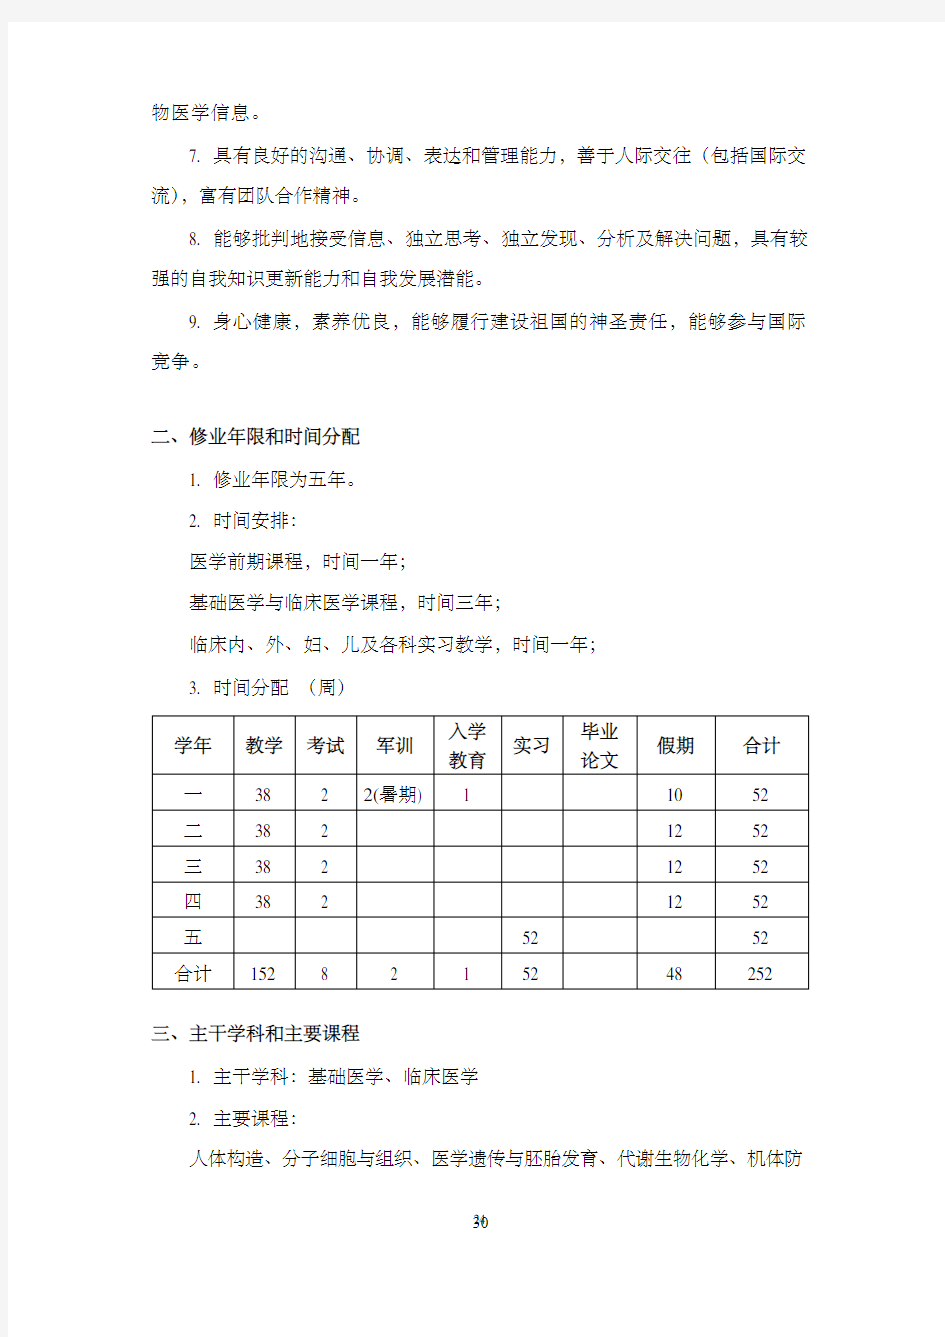 上海交通大学医学院临床医学五年制培养计划(2019)